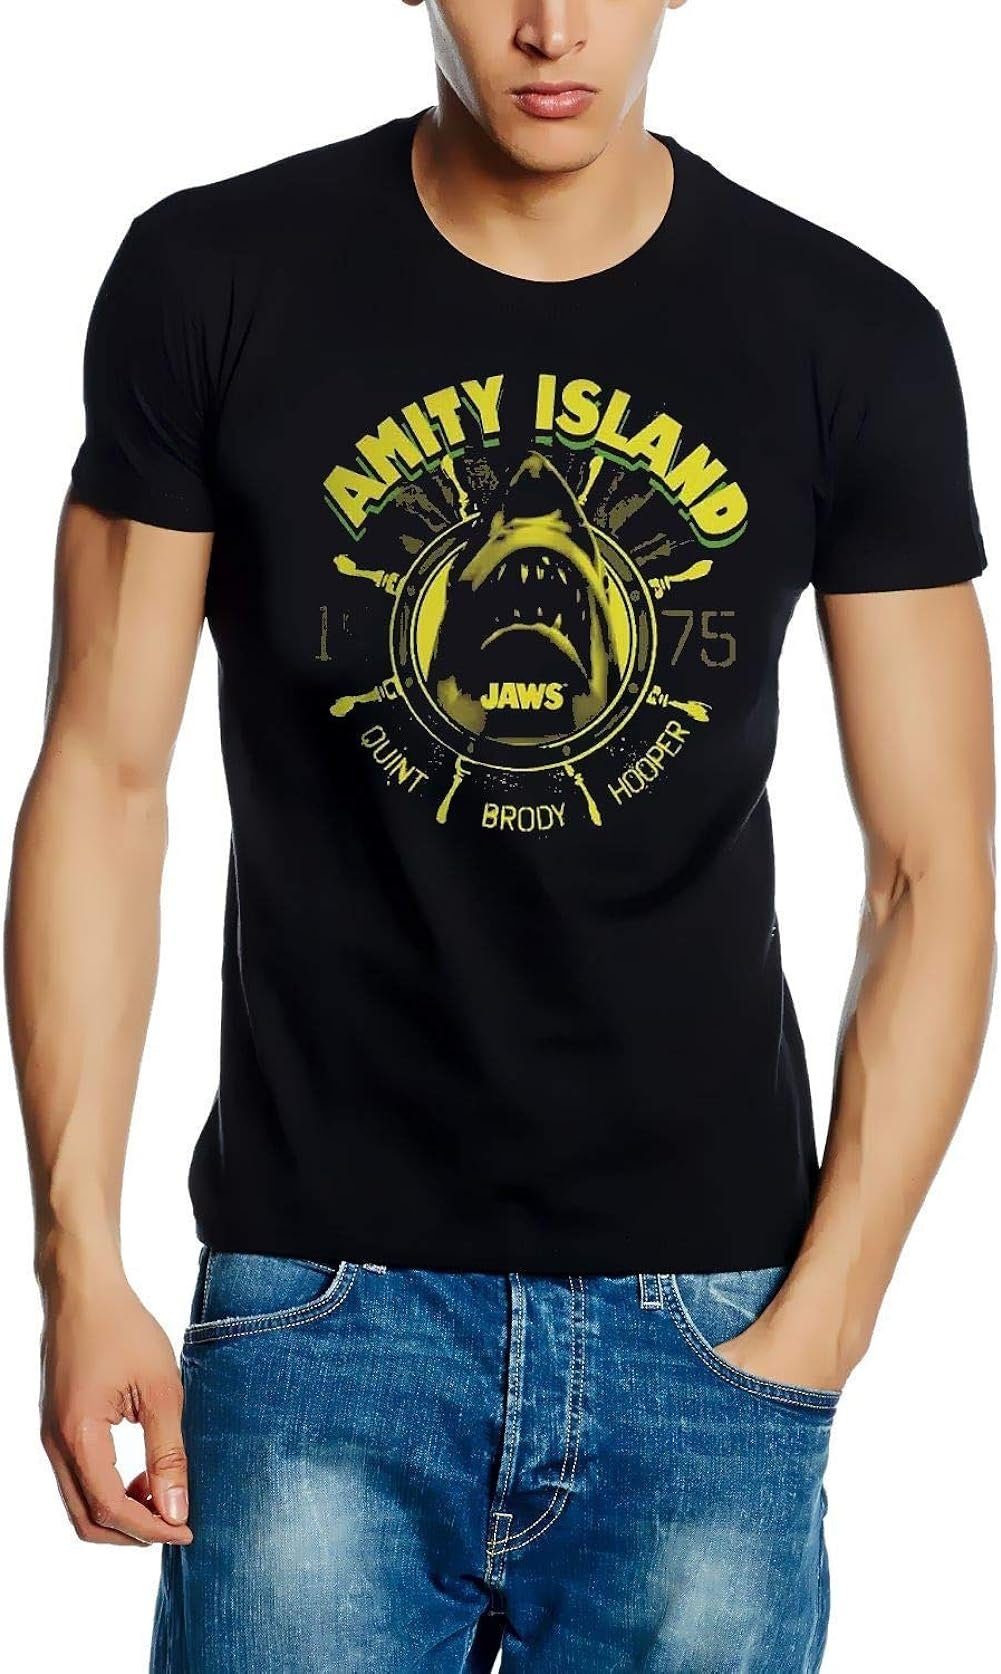 der XL JAWS Hai M weiße AMITY Hai ISLAND L s XXL schwarz T-Shirt Der Print-Shirt Weiße